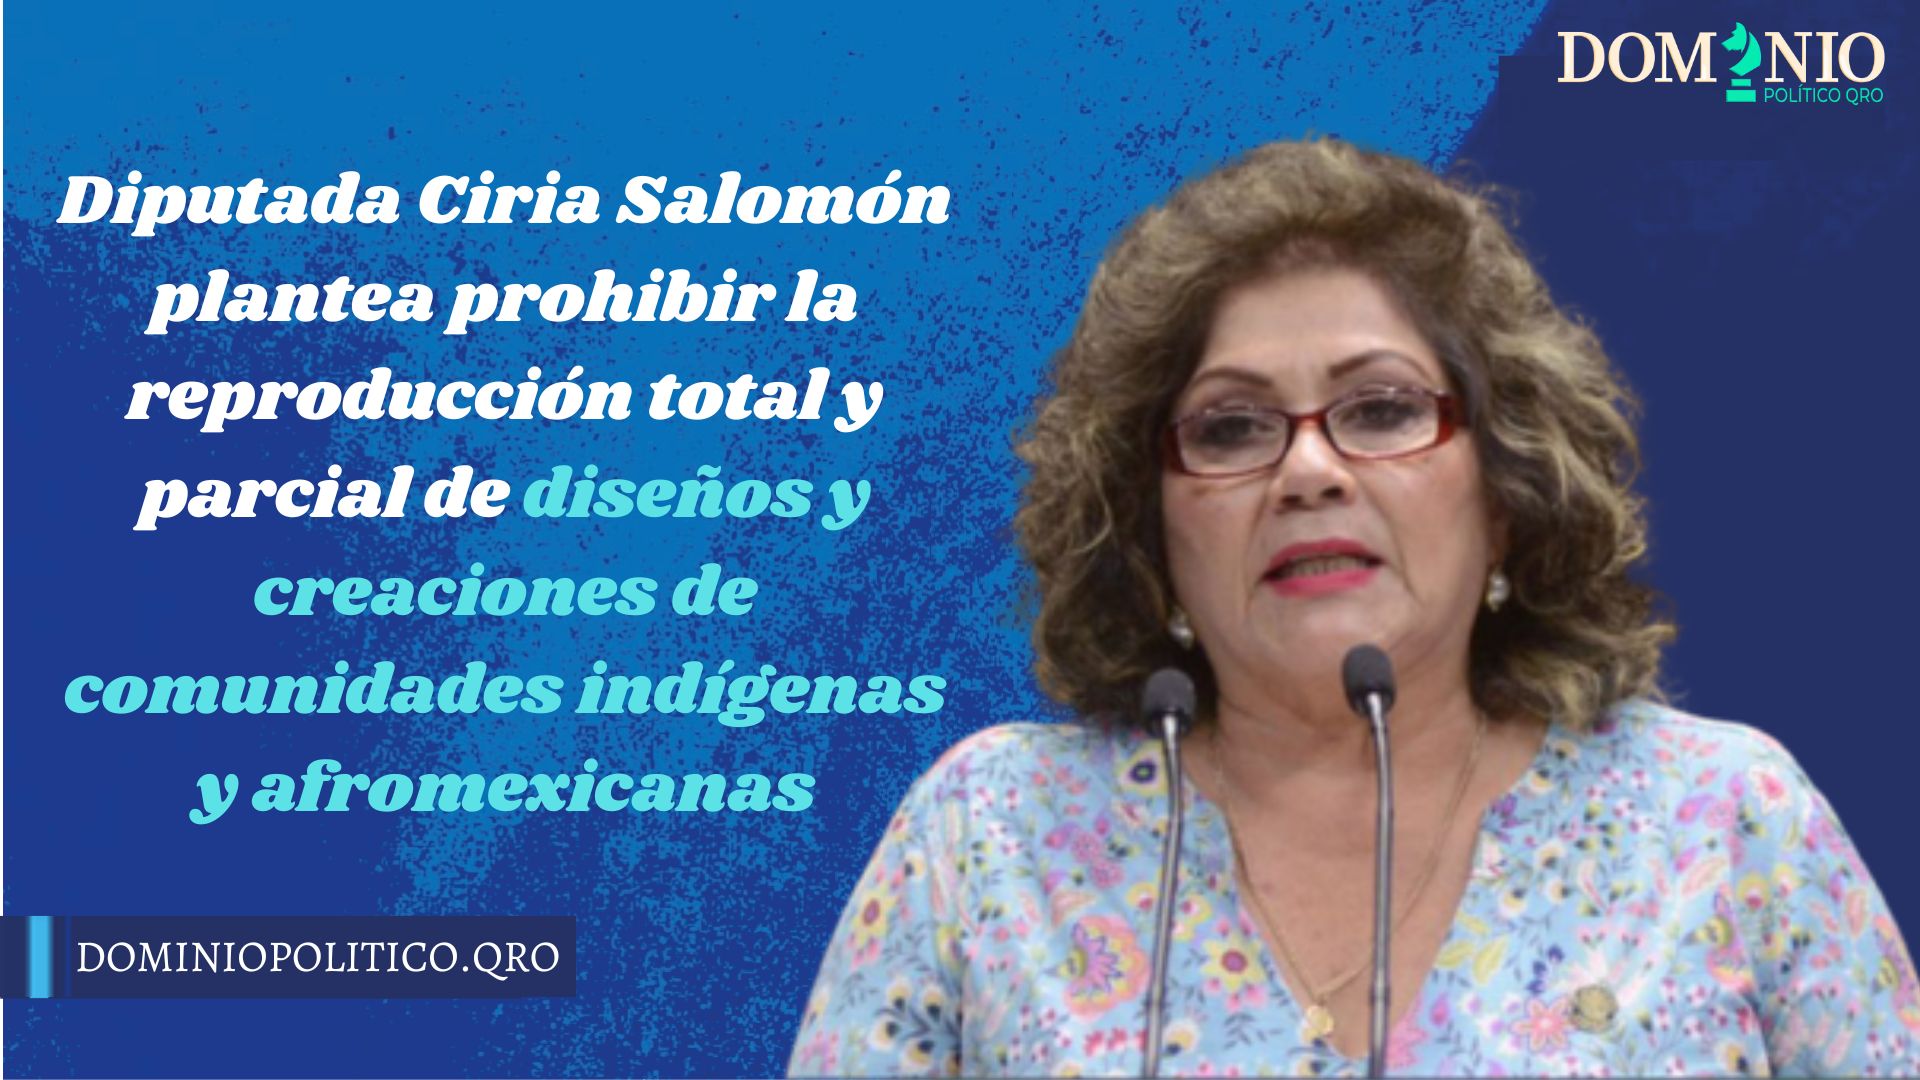 La diputada Ciria Salomón planteó prohibir la reproducción total y parcial de los diseños y creaciones de las comunidades indígenas y afromexicanas.